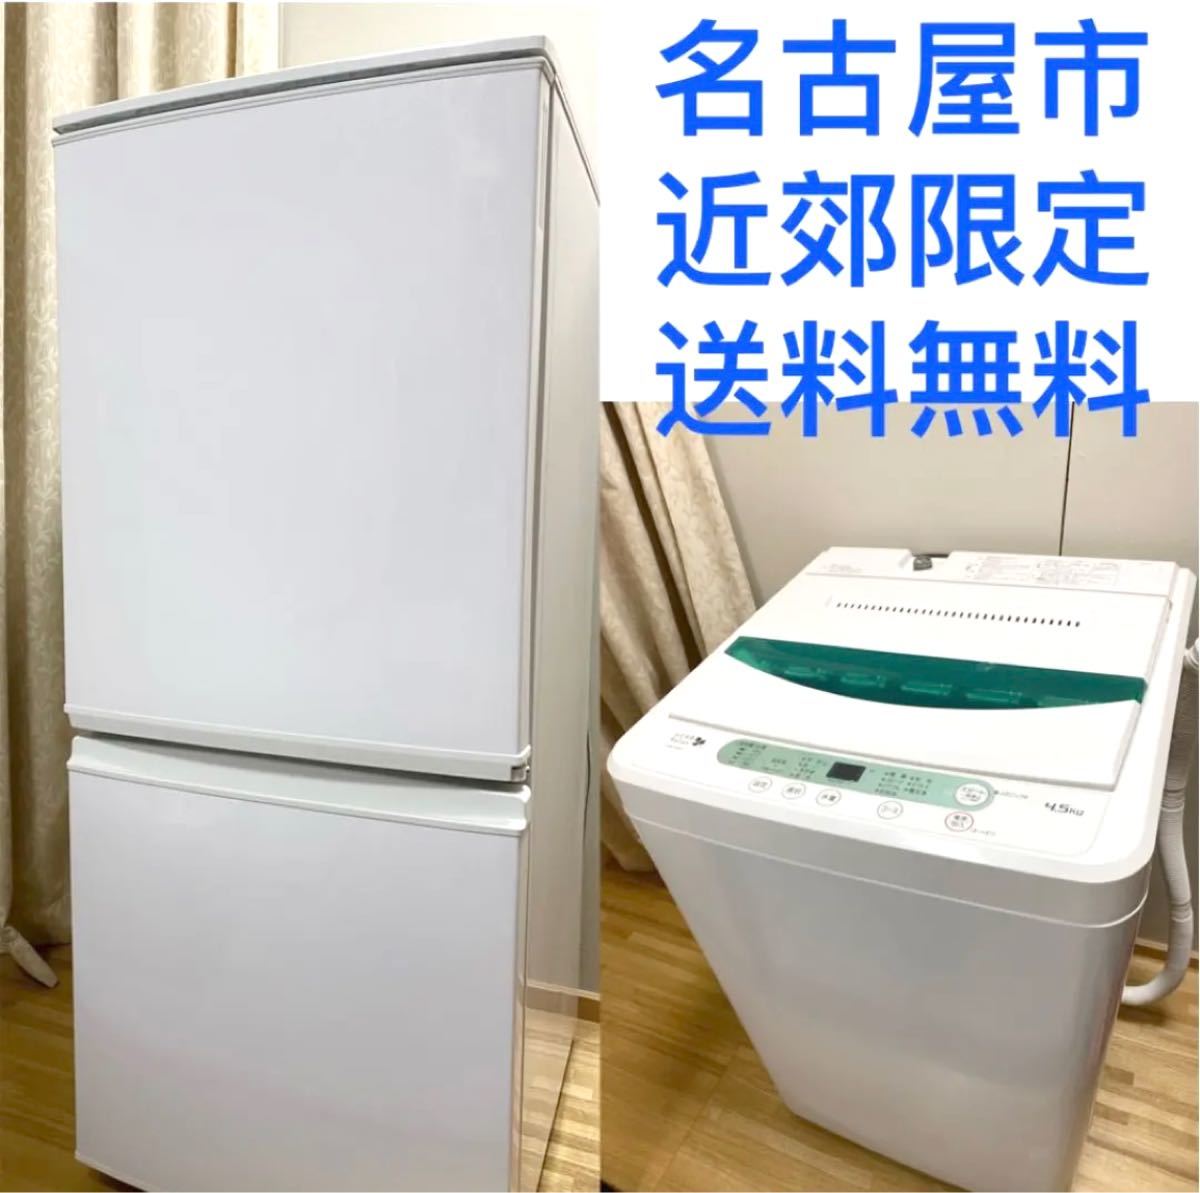 愛知県名古屋市内近郊限定送料設置無料/ 洗濯機 冷蔵庫 新生活応援